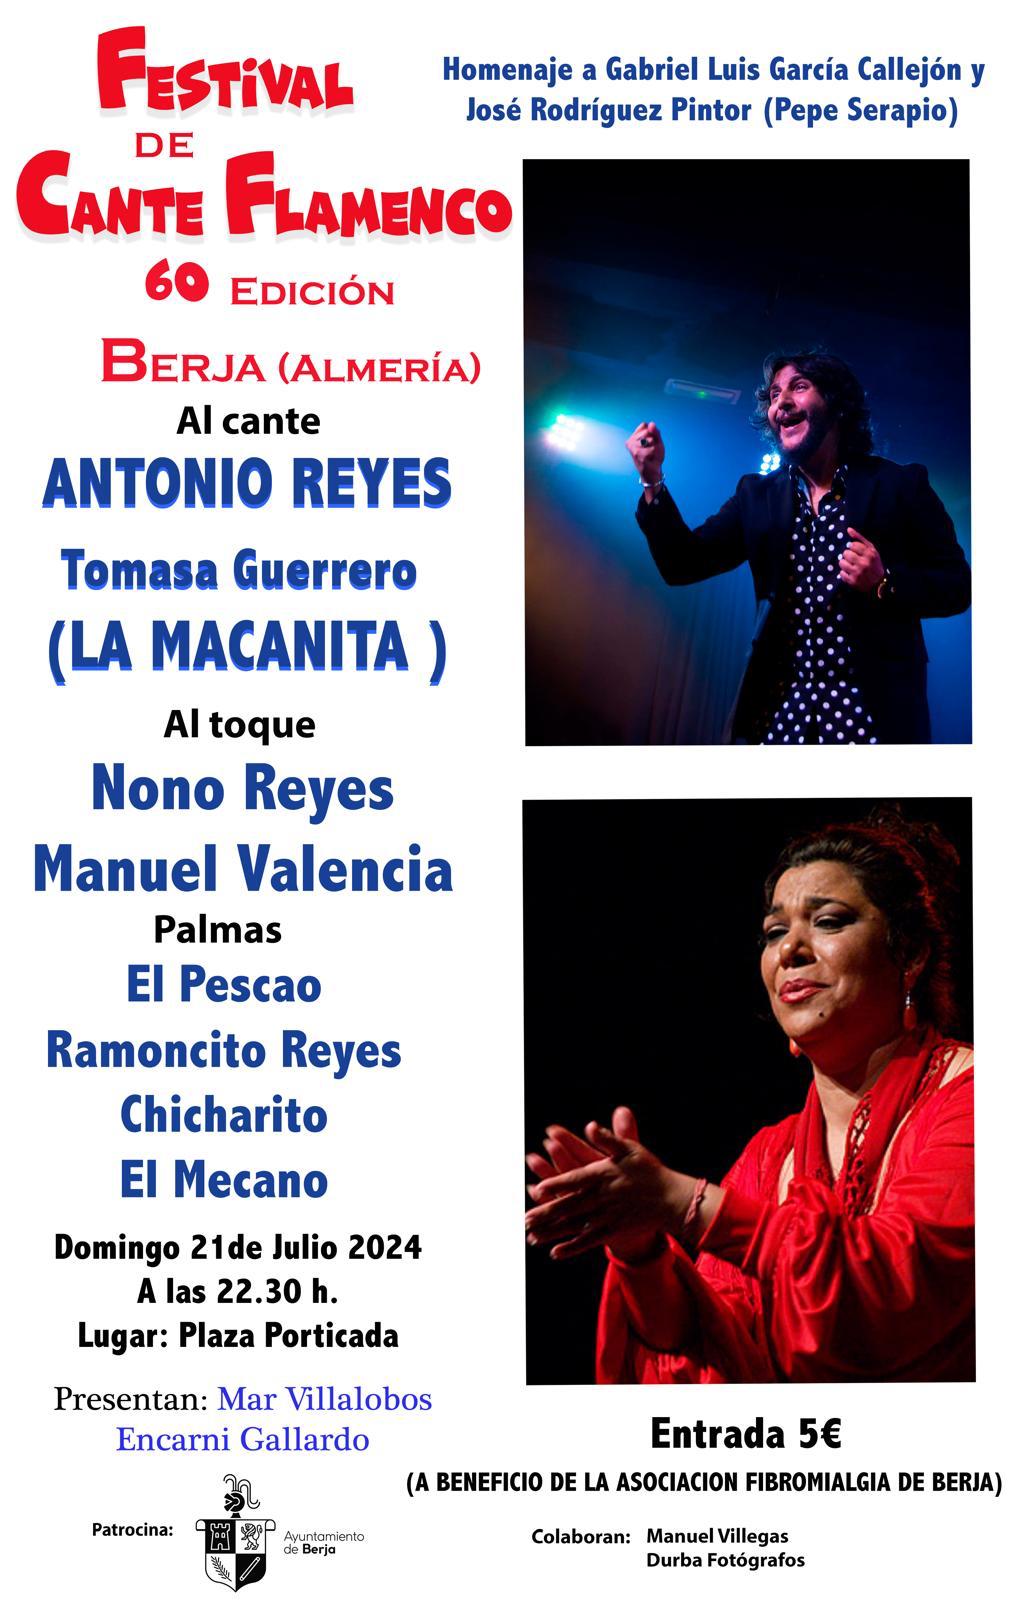 El Festival de Cante Flamenco de Berja celebra su sexagésima edición el domingo 21 de julio